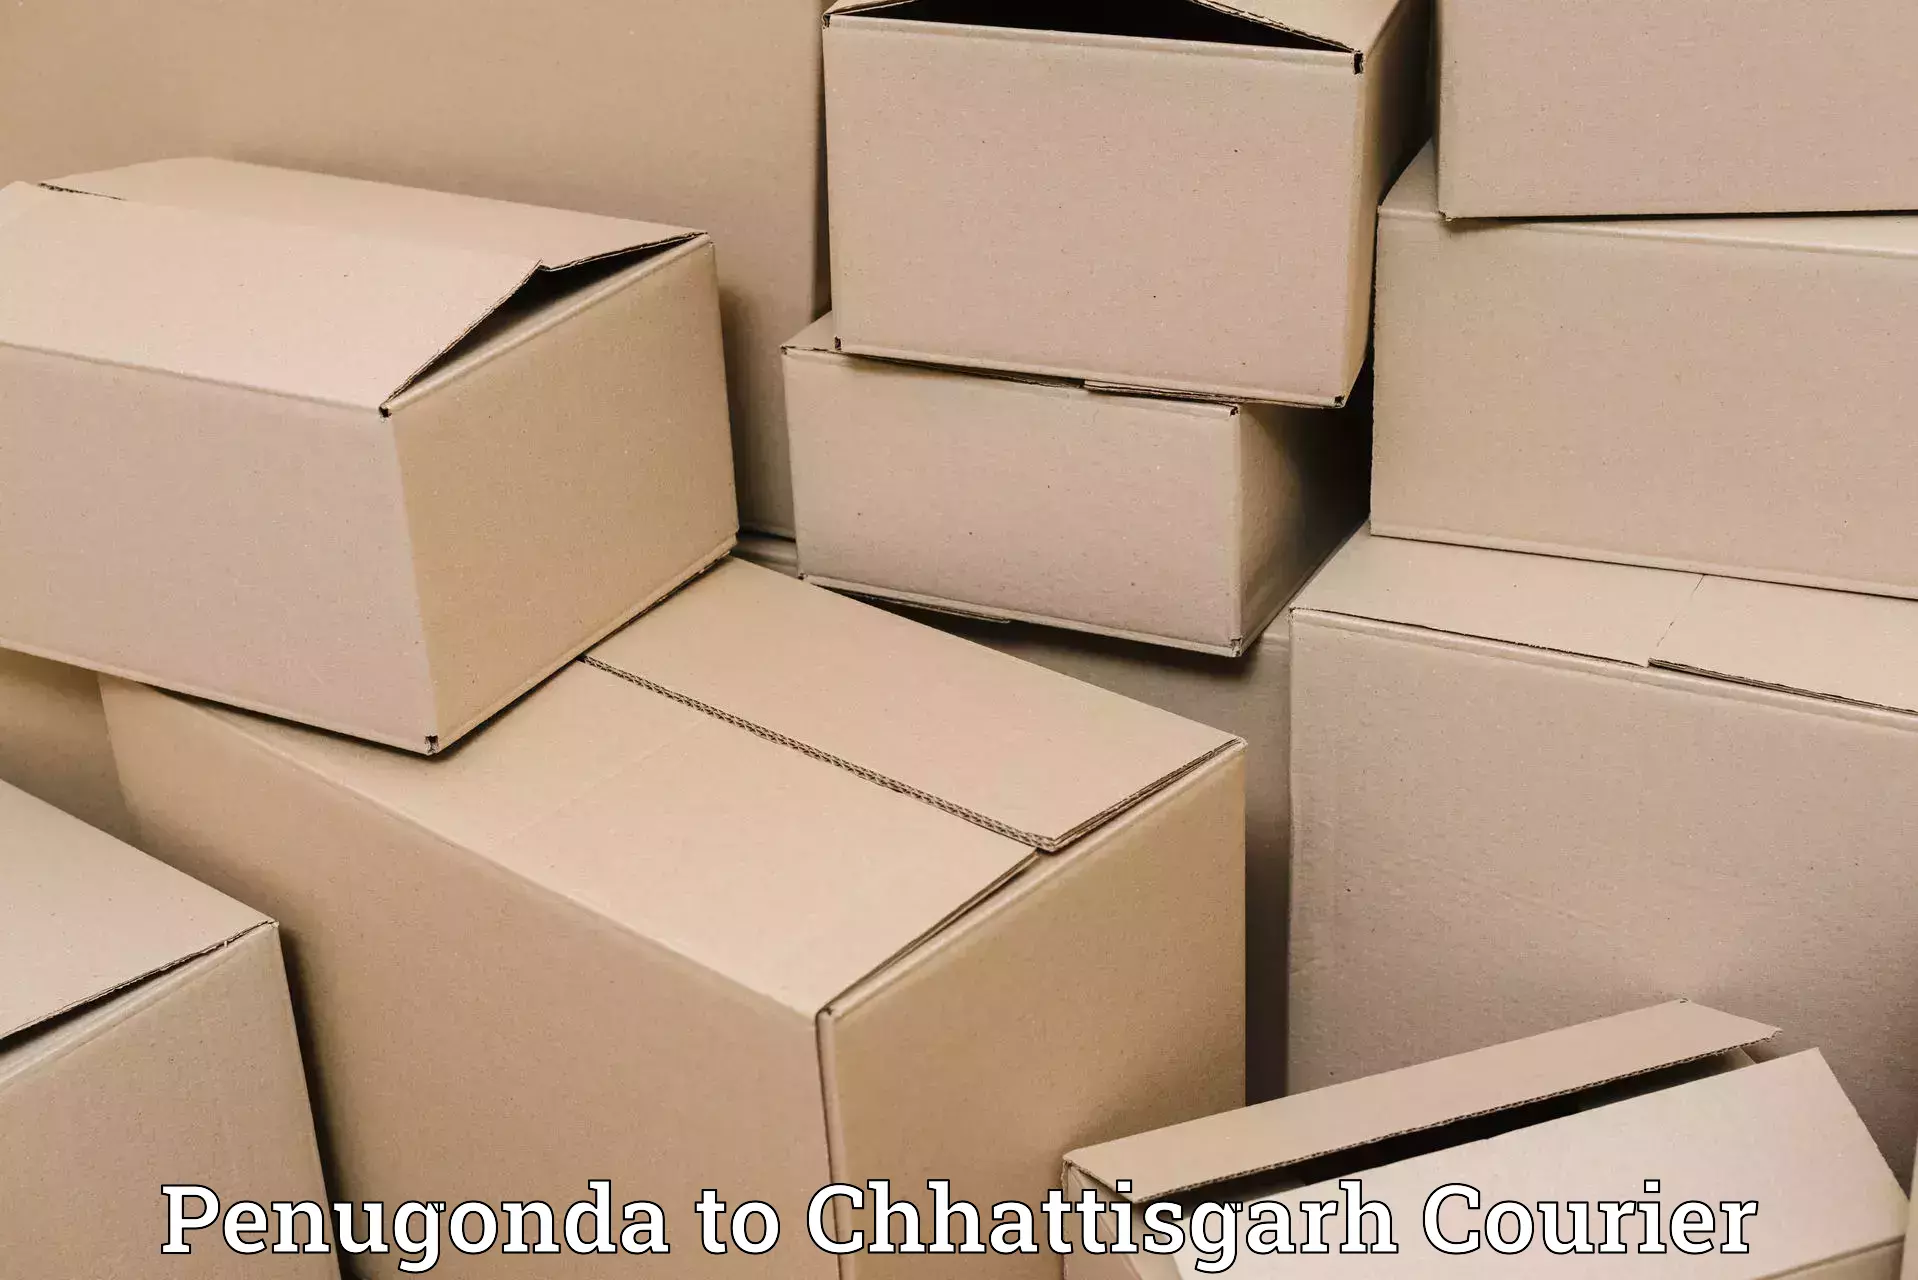 Nationwide delivery network Penugonda to Bijapur Chhattisgarh